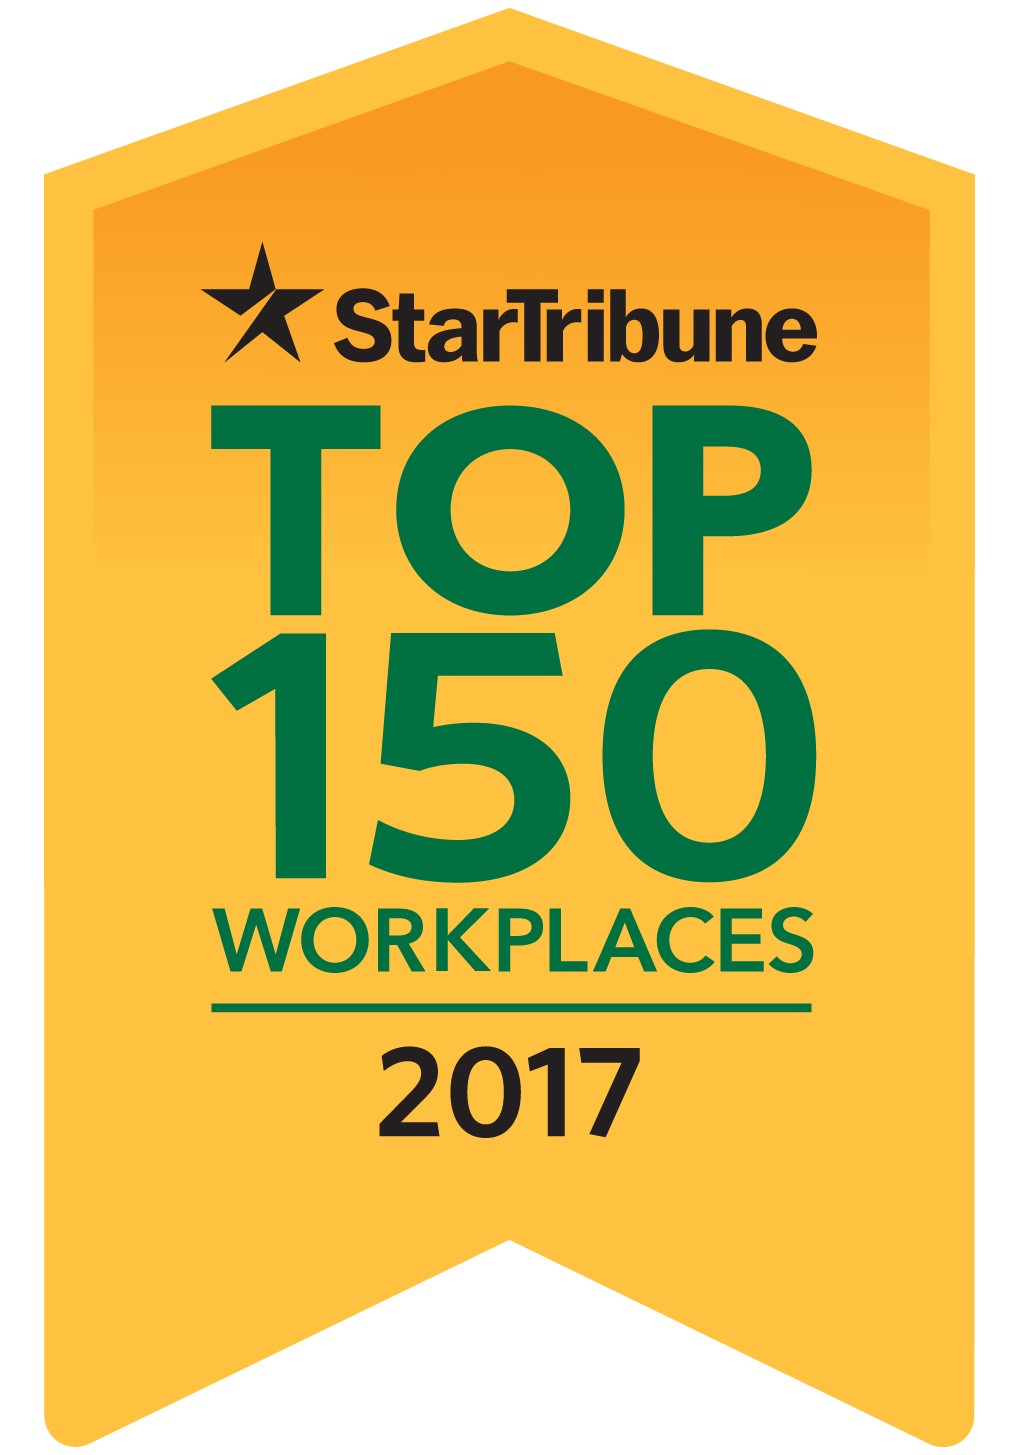 Star Tribune Top 150 Workplaces 2017 Logo